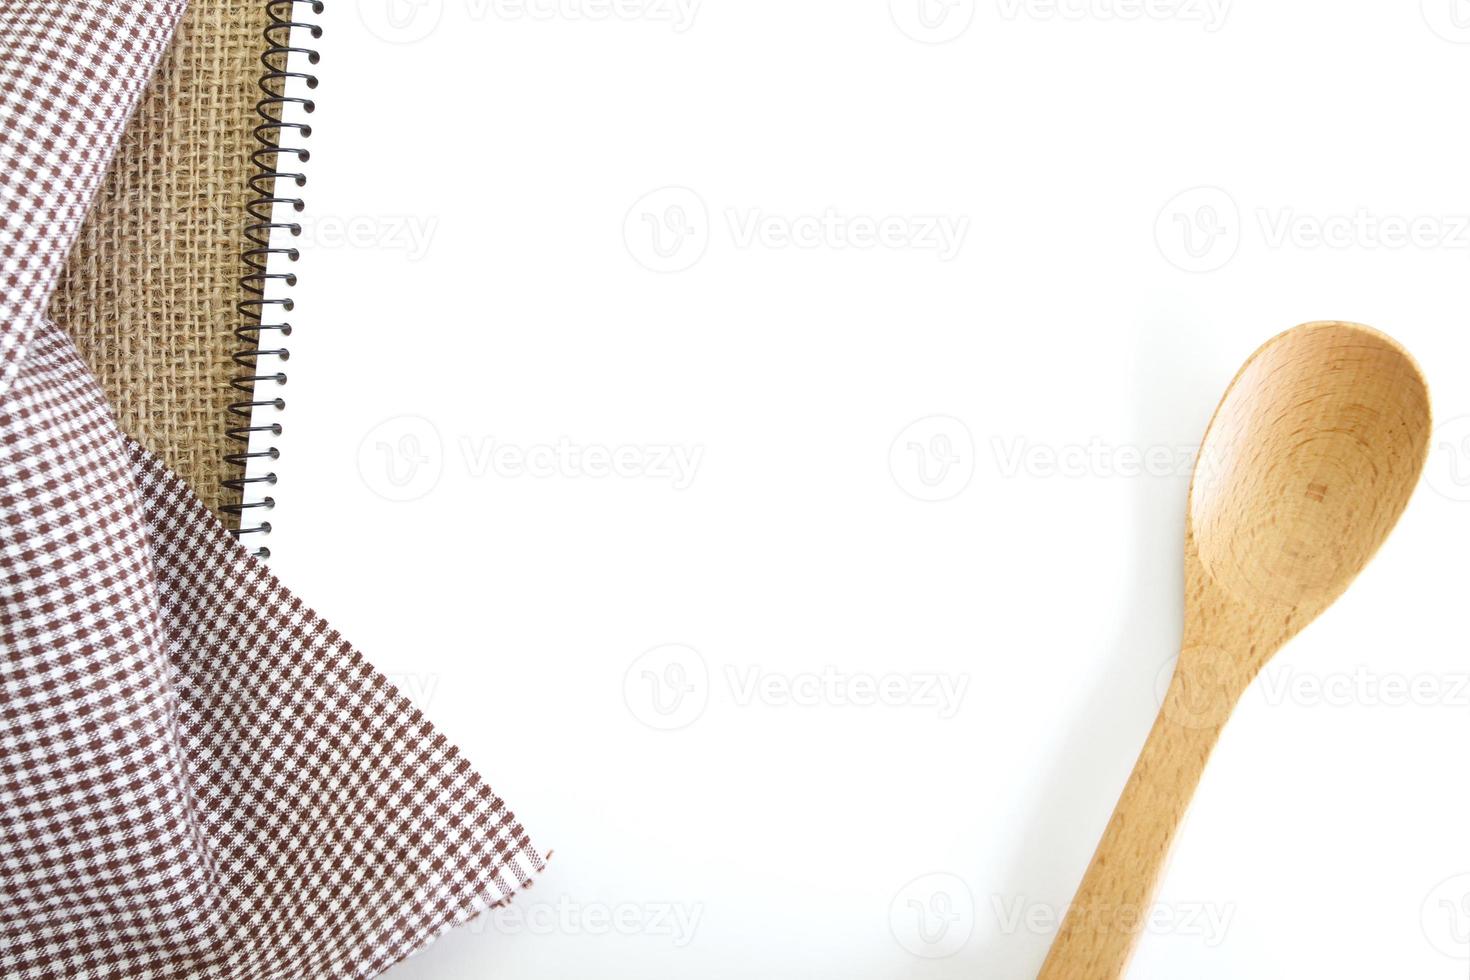 livro de receitas branco em branco na mesa da cozinha foto